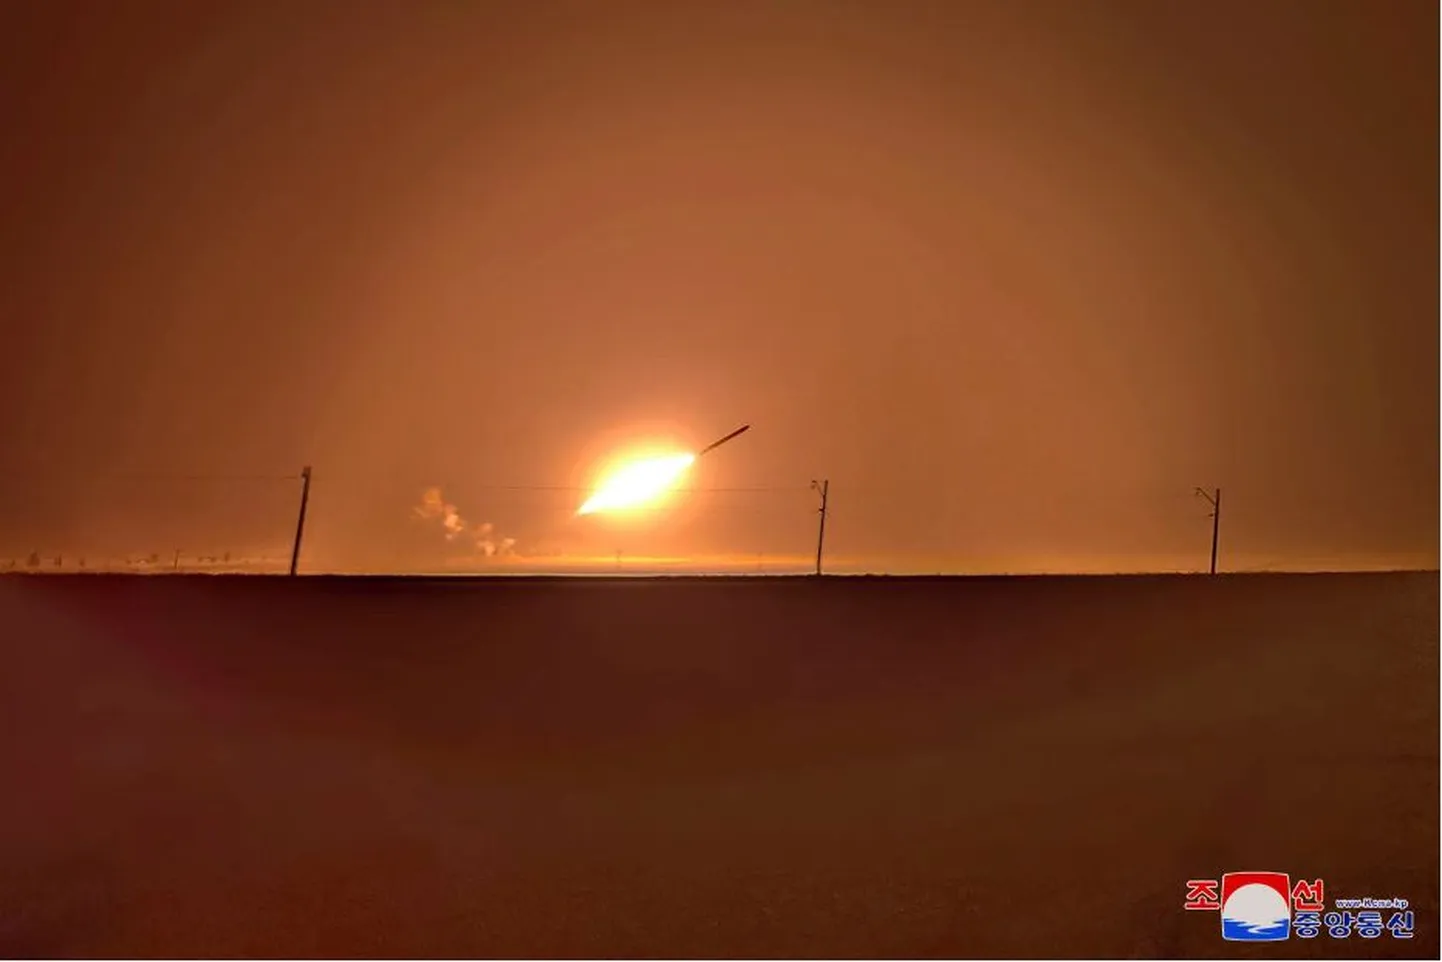 Северная Корея 2 сентября запустила крылатую ракету большой дальности во время ядерных испытаний.